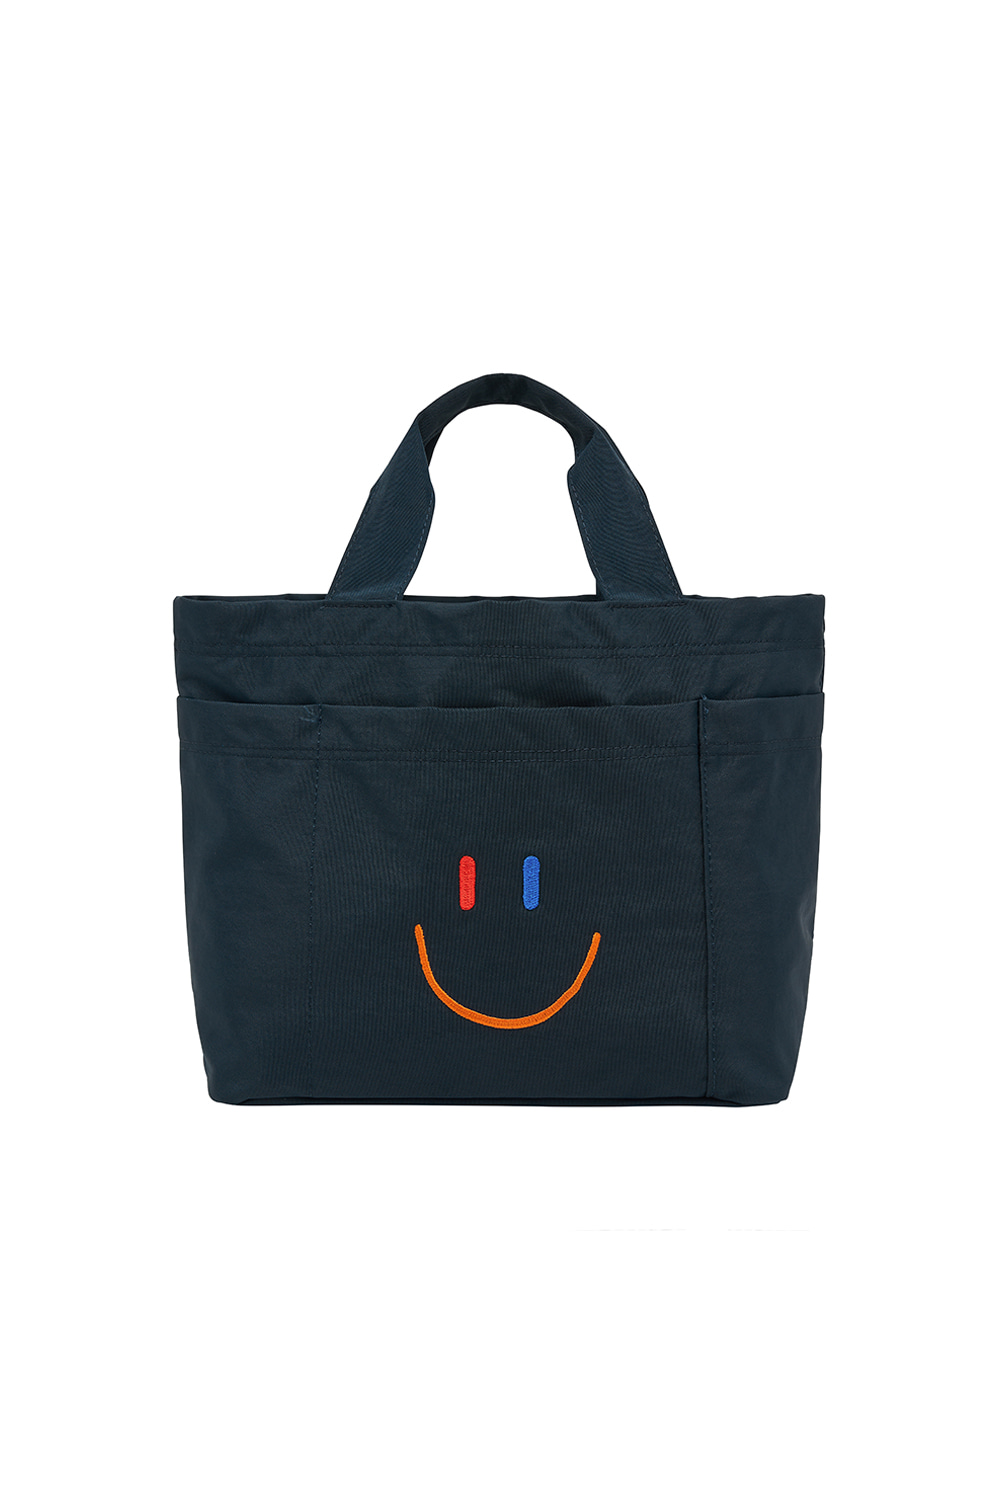 LaLa Cart Bag [Navy]